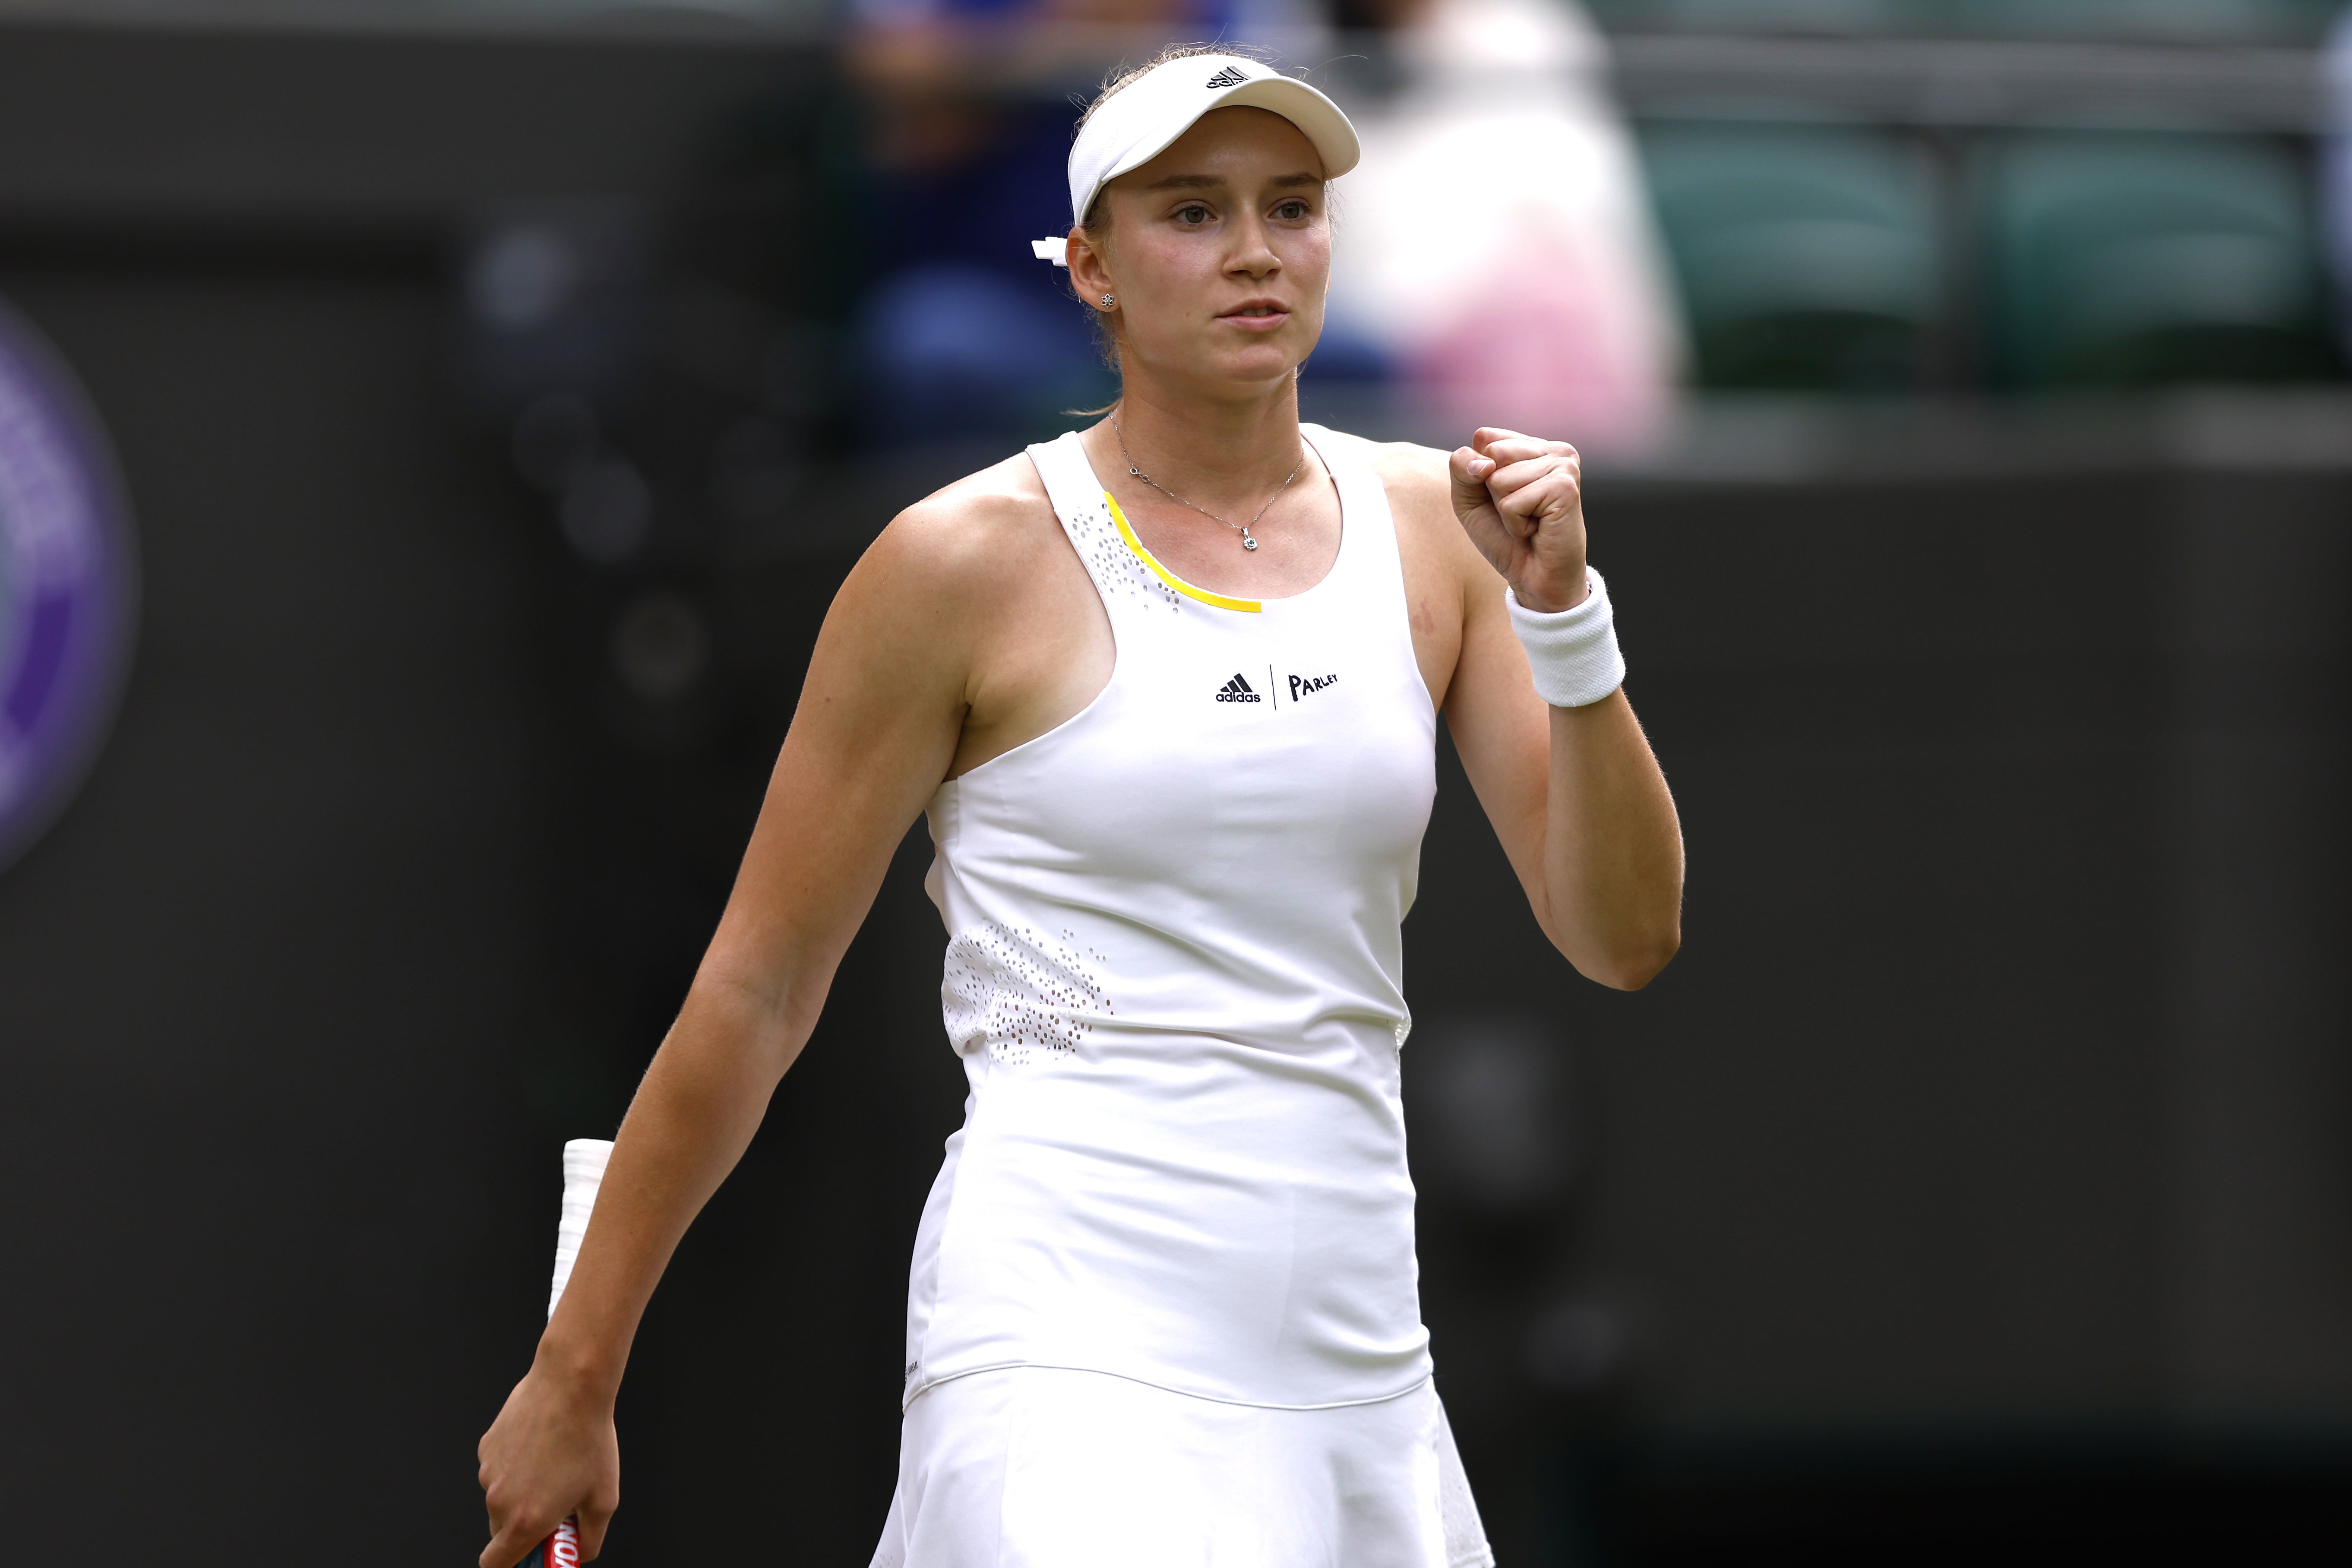 Wimbledon 2022 Elena Rybakina beats Ajla Tomljanovic to reach semi